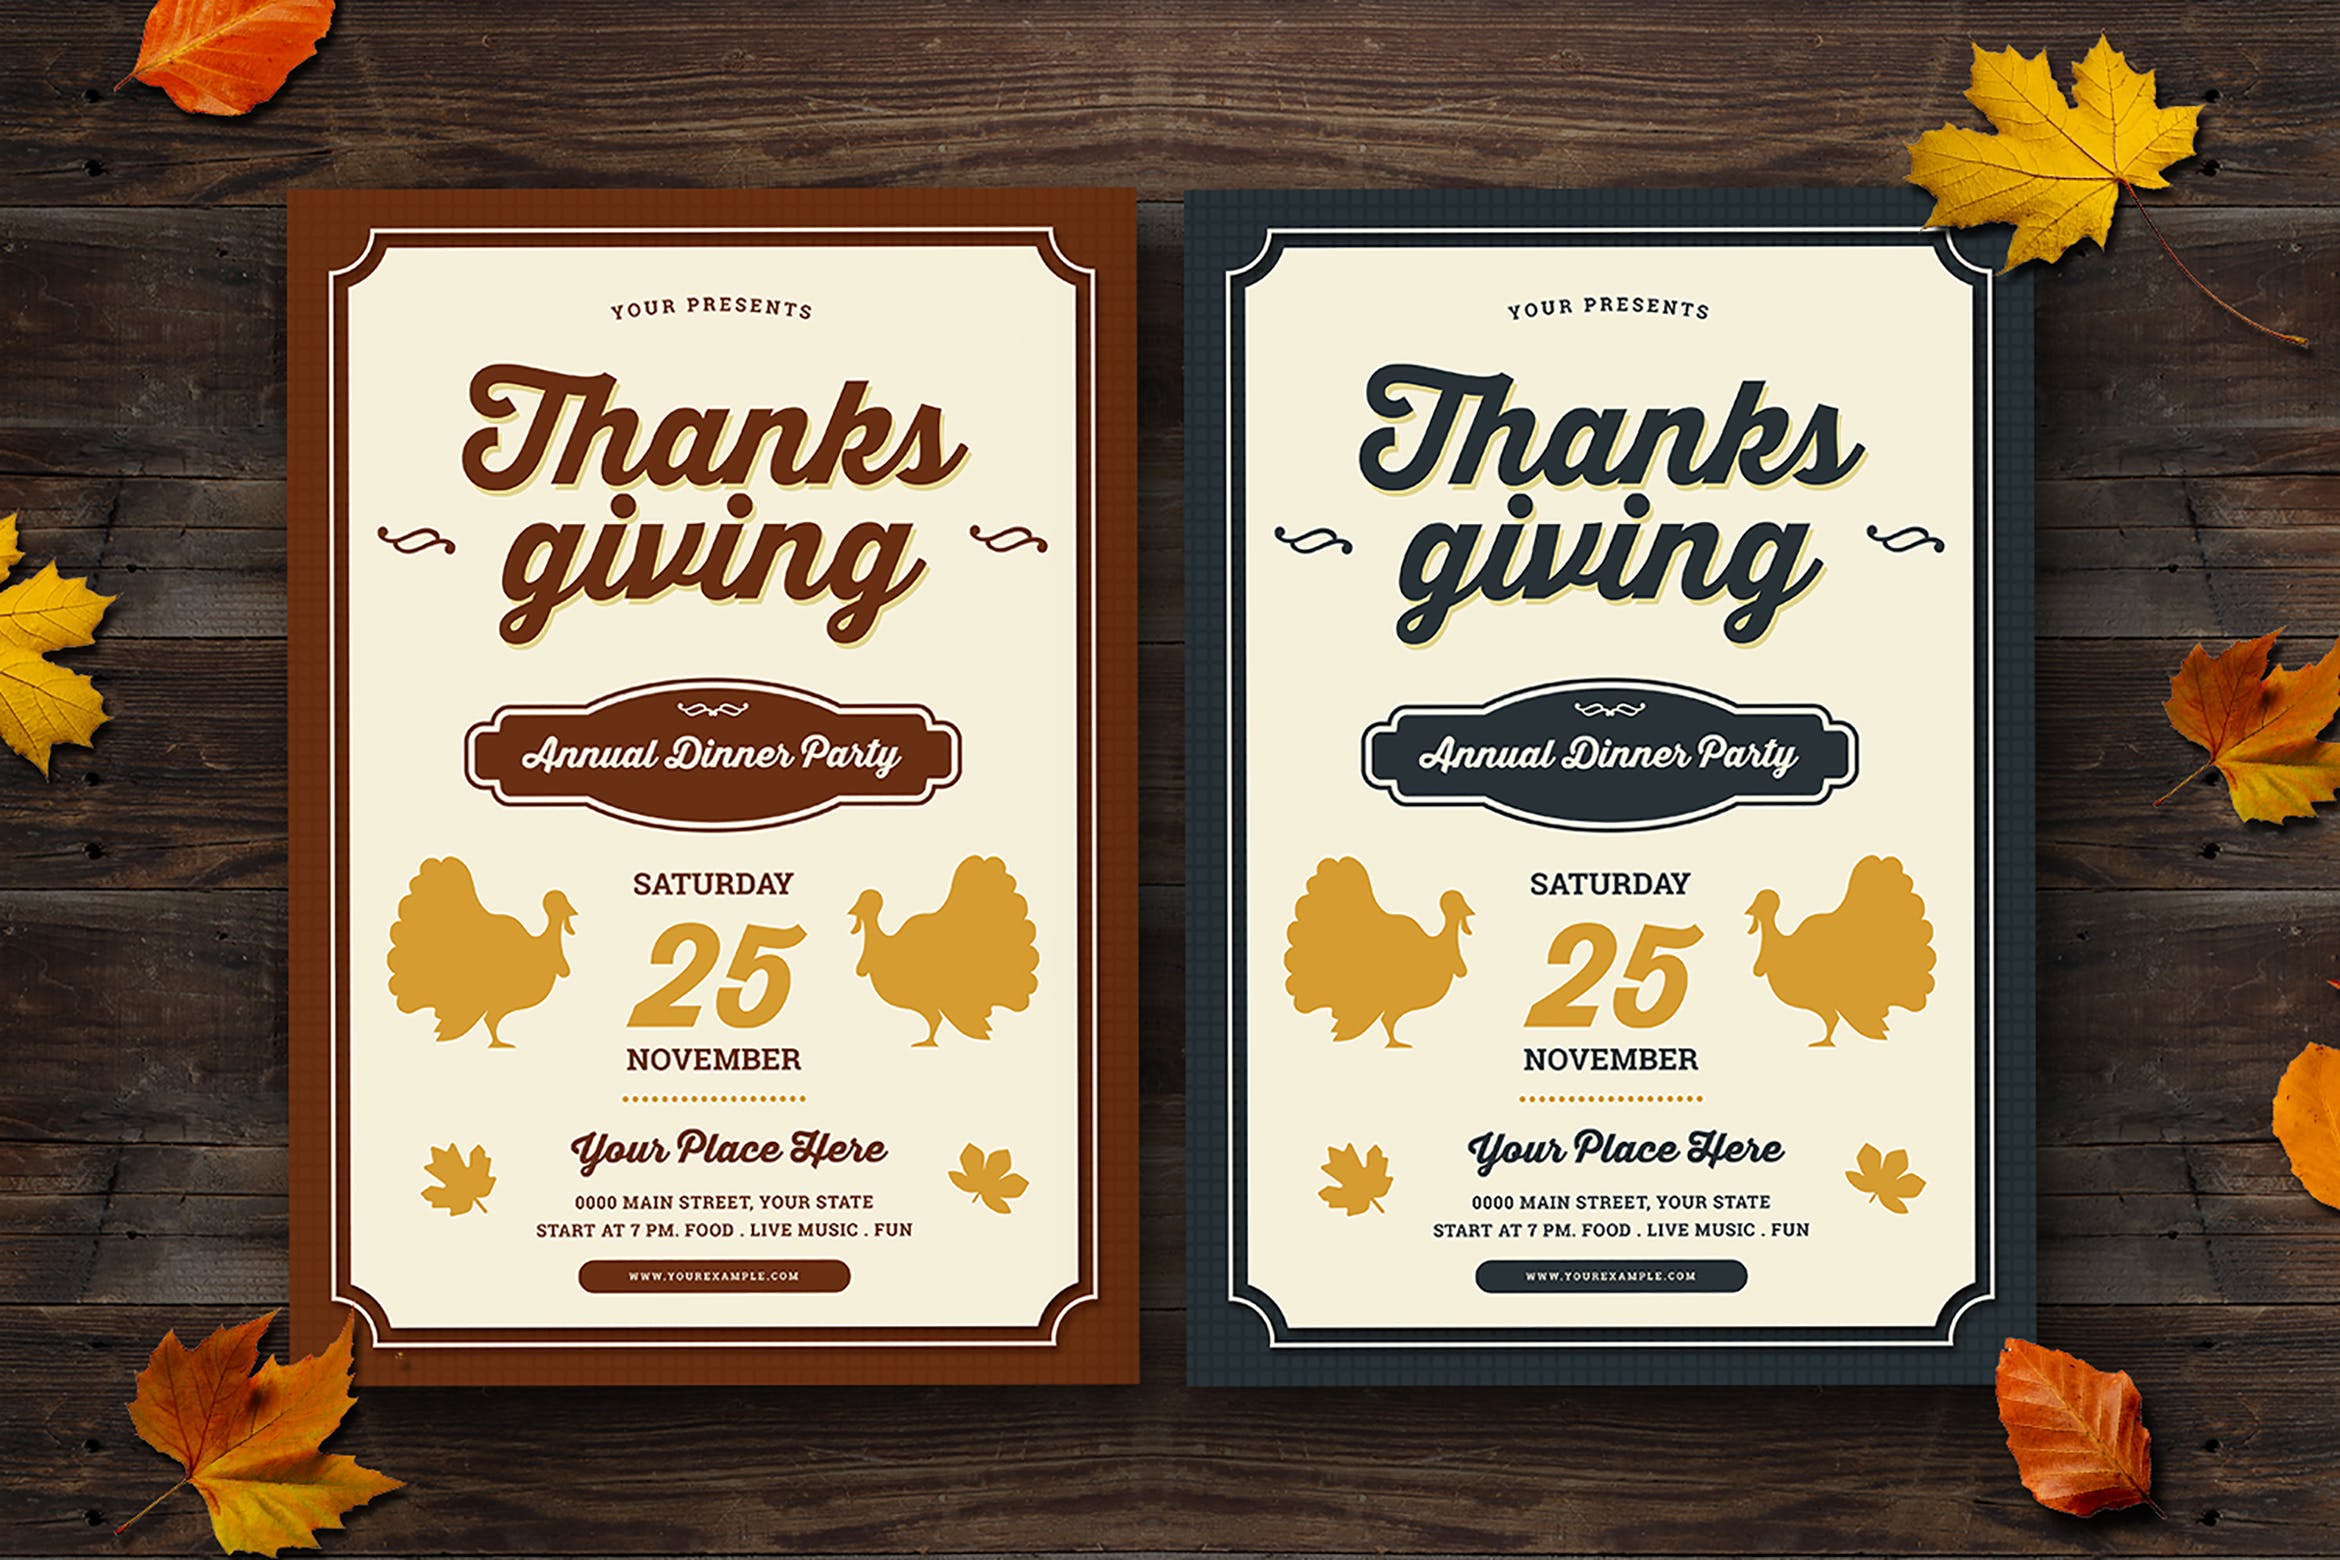 感恩节晚宴活动邀请传单海报设计模板 Thanksgiving Dinner Flyer插图